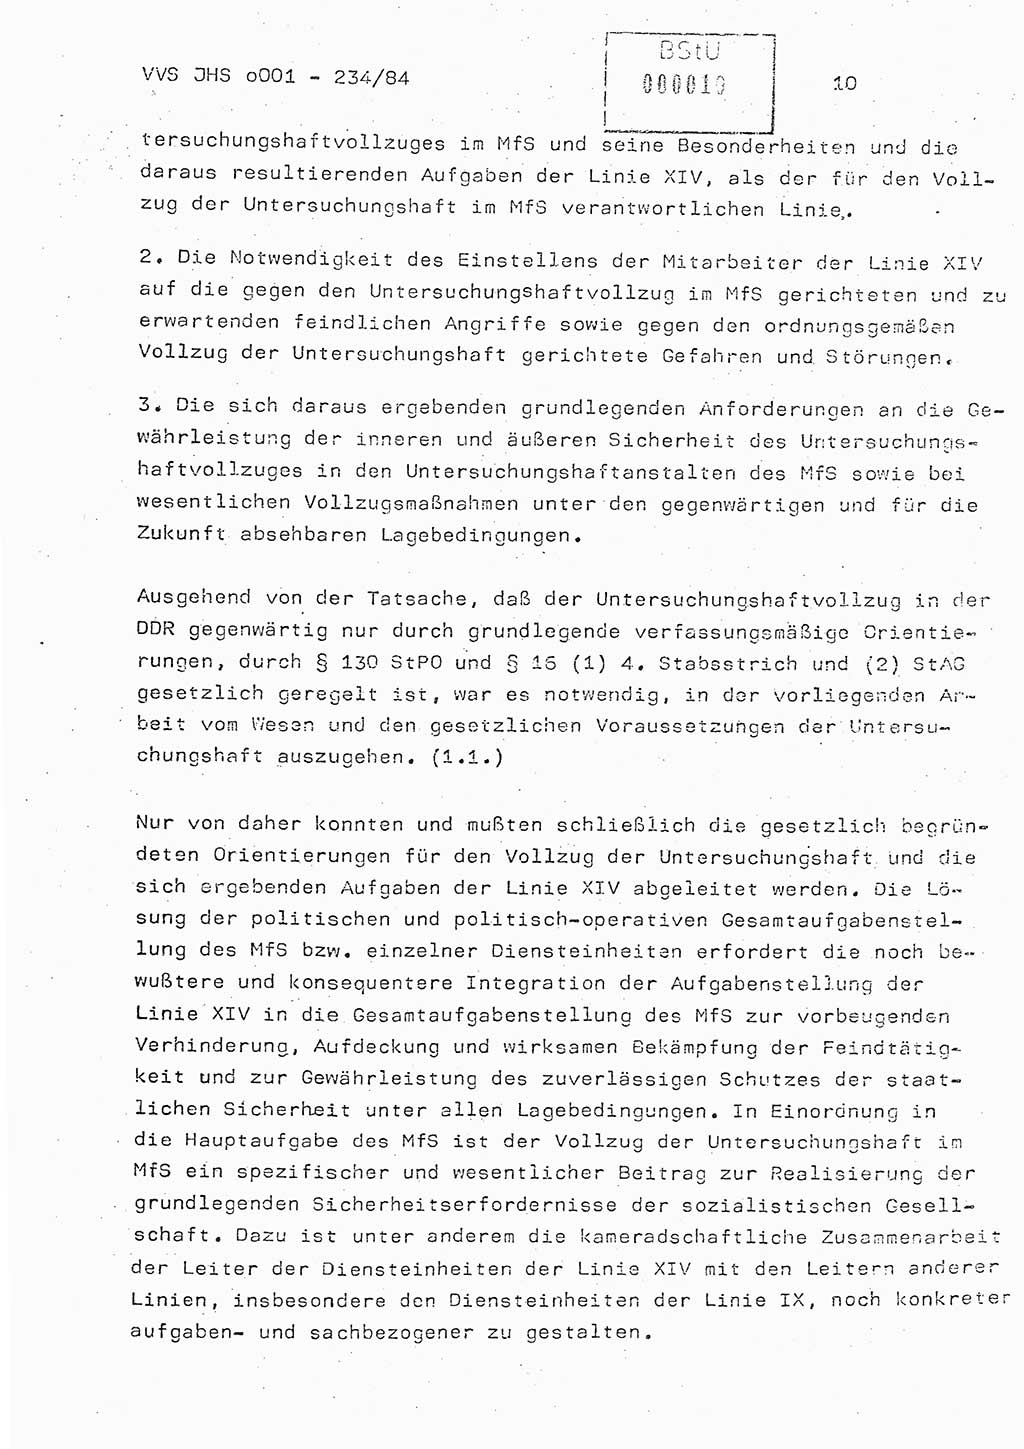 Dissertation Oberst Siegfried Rataizick (Abt. ⅩⅣ), Oberstleutnant Volkmar Heinz (Abt. ⅩⅣ), Oberstleutnant Werner Stein (HA Ⅸ), Hauptmann Heinz Conrad (JHS), Ministerium für Staatssicherheit (MfS) [Deutsche Demokratische Republik (DDR)], Juristische Hochschule (JHS), Vertrauliche Verschlußsache (VVS) o001-234/84, Potsdam 1984, Seite 10 (Diss. MfS DDR JHS VVS o001-234/84 1984, S. 10)